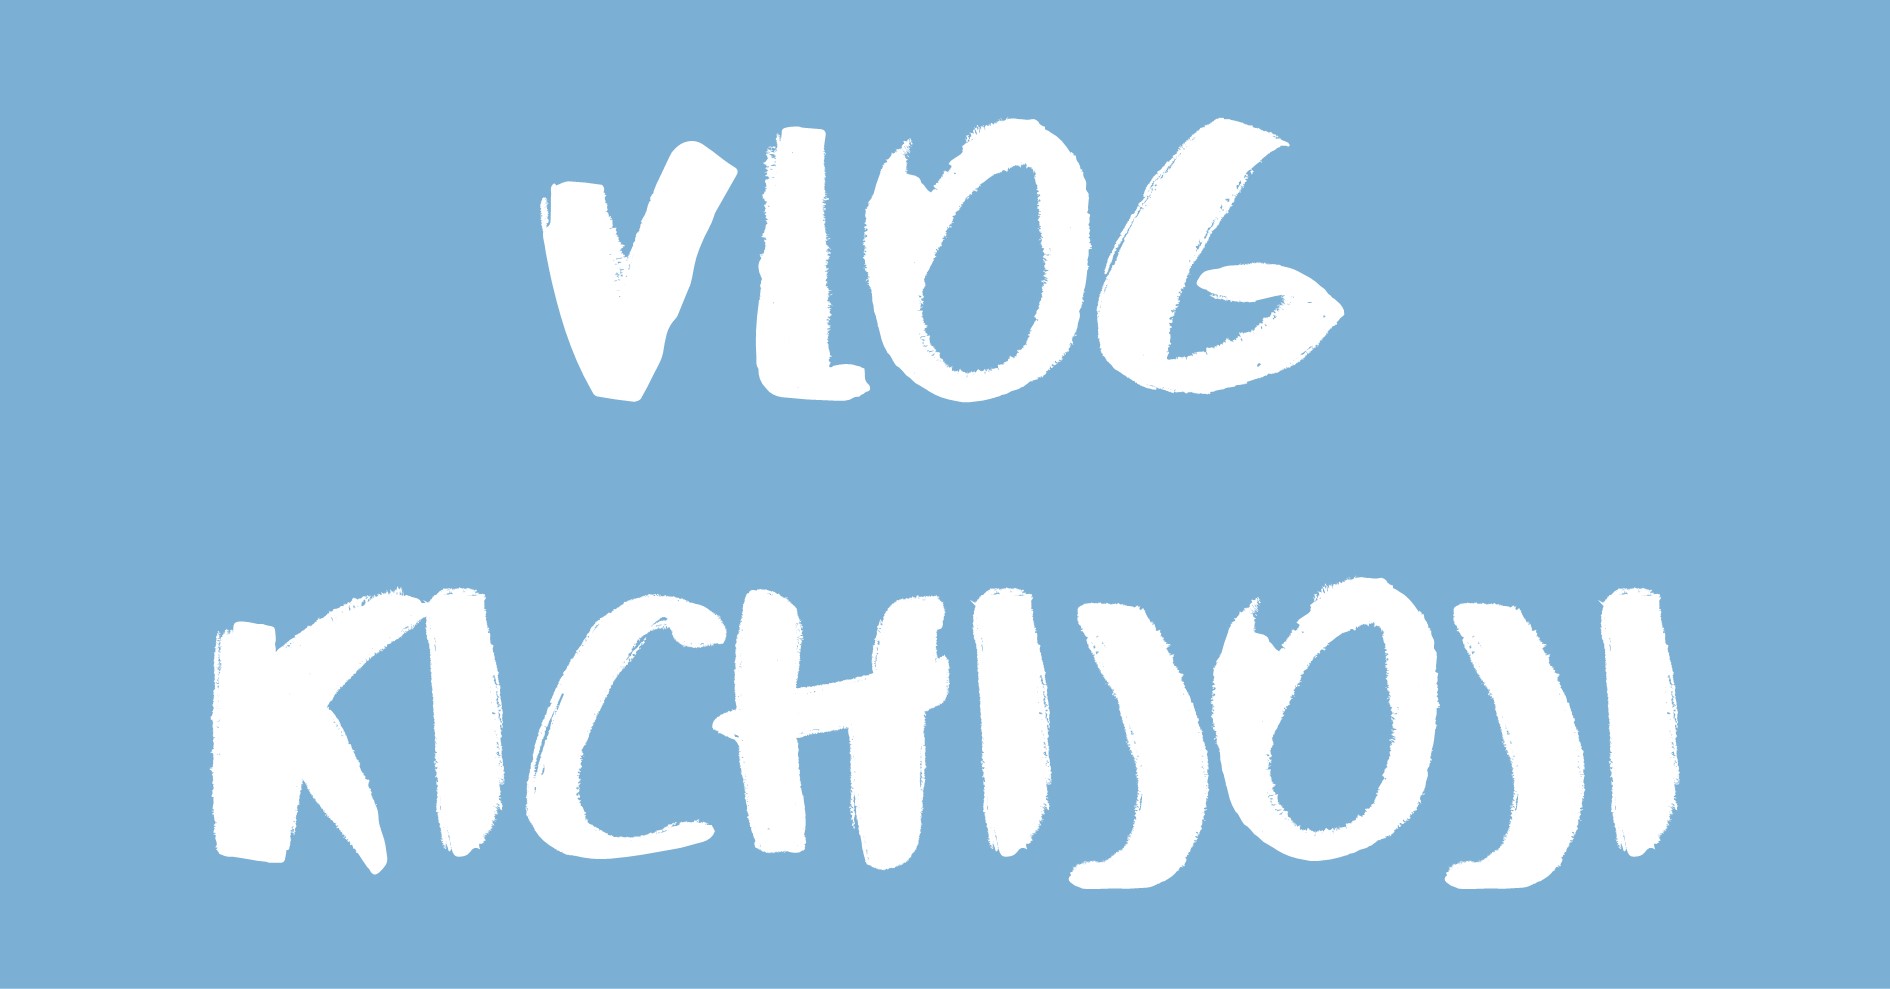 Vlog Kichijoji